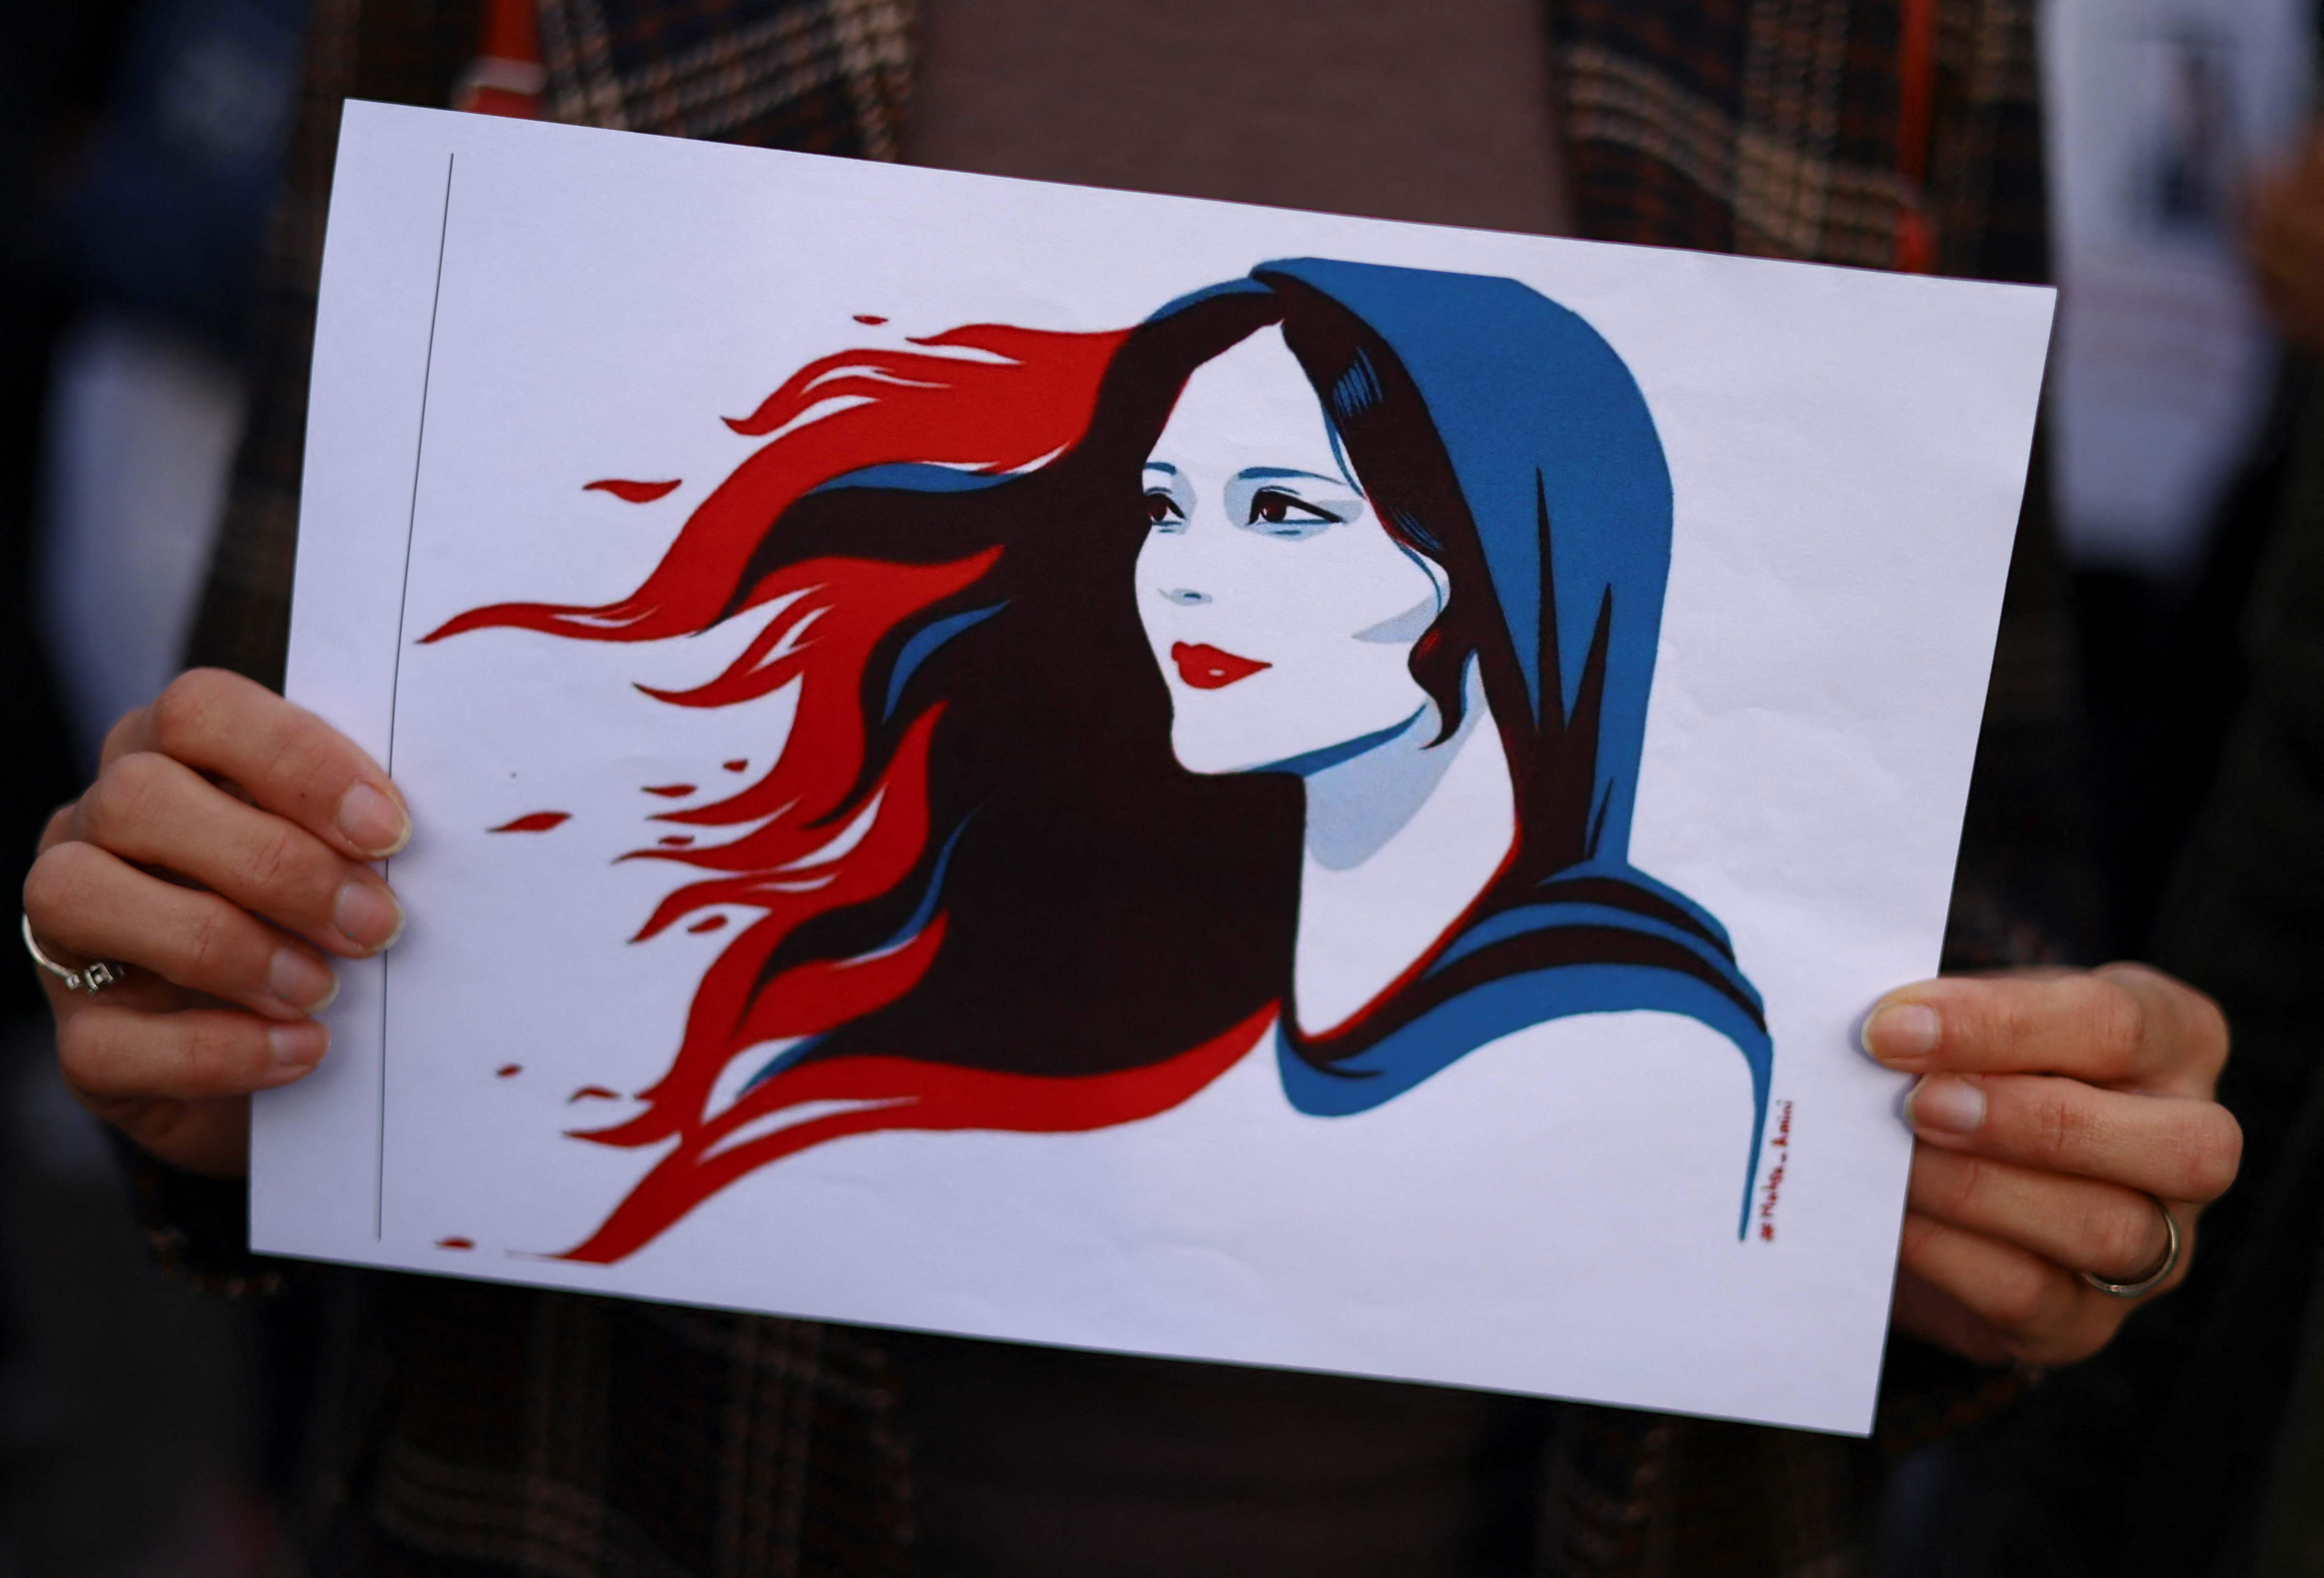 La mujer se convirtió en un símbolo de protesta para mujer en Irán y en otros países (Reuters)